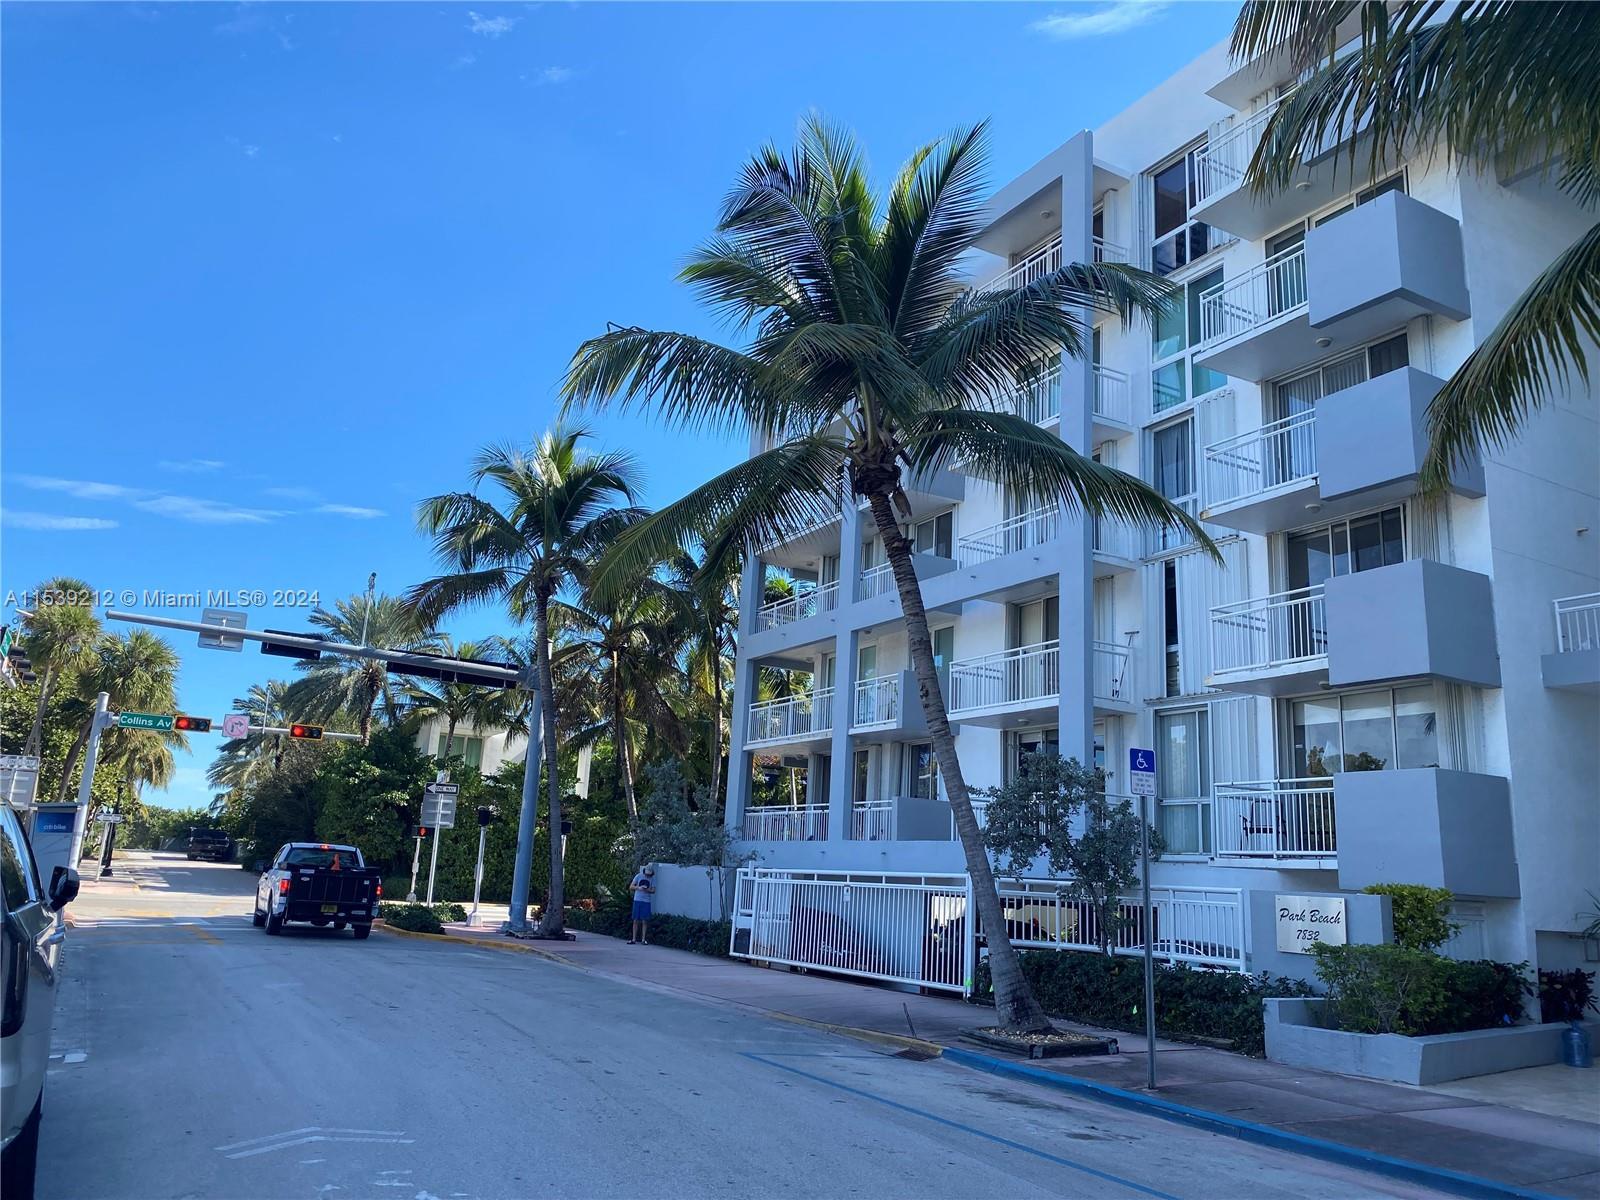 Photo of 7832 Collins Ave #201 in Miami Beach, FL